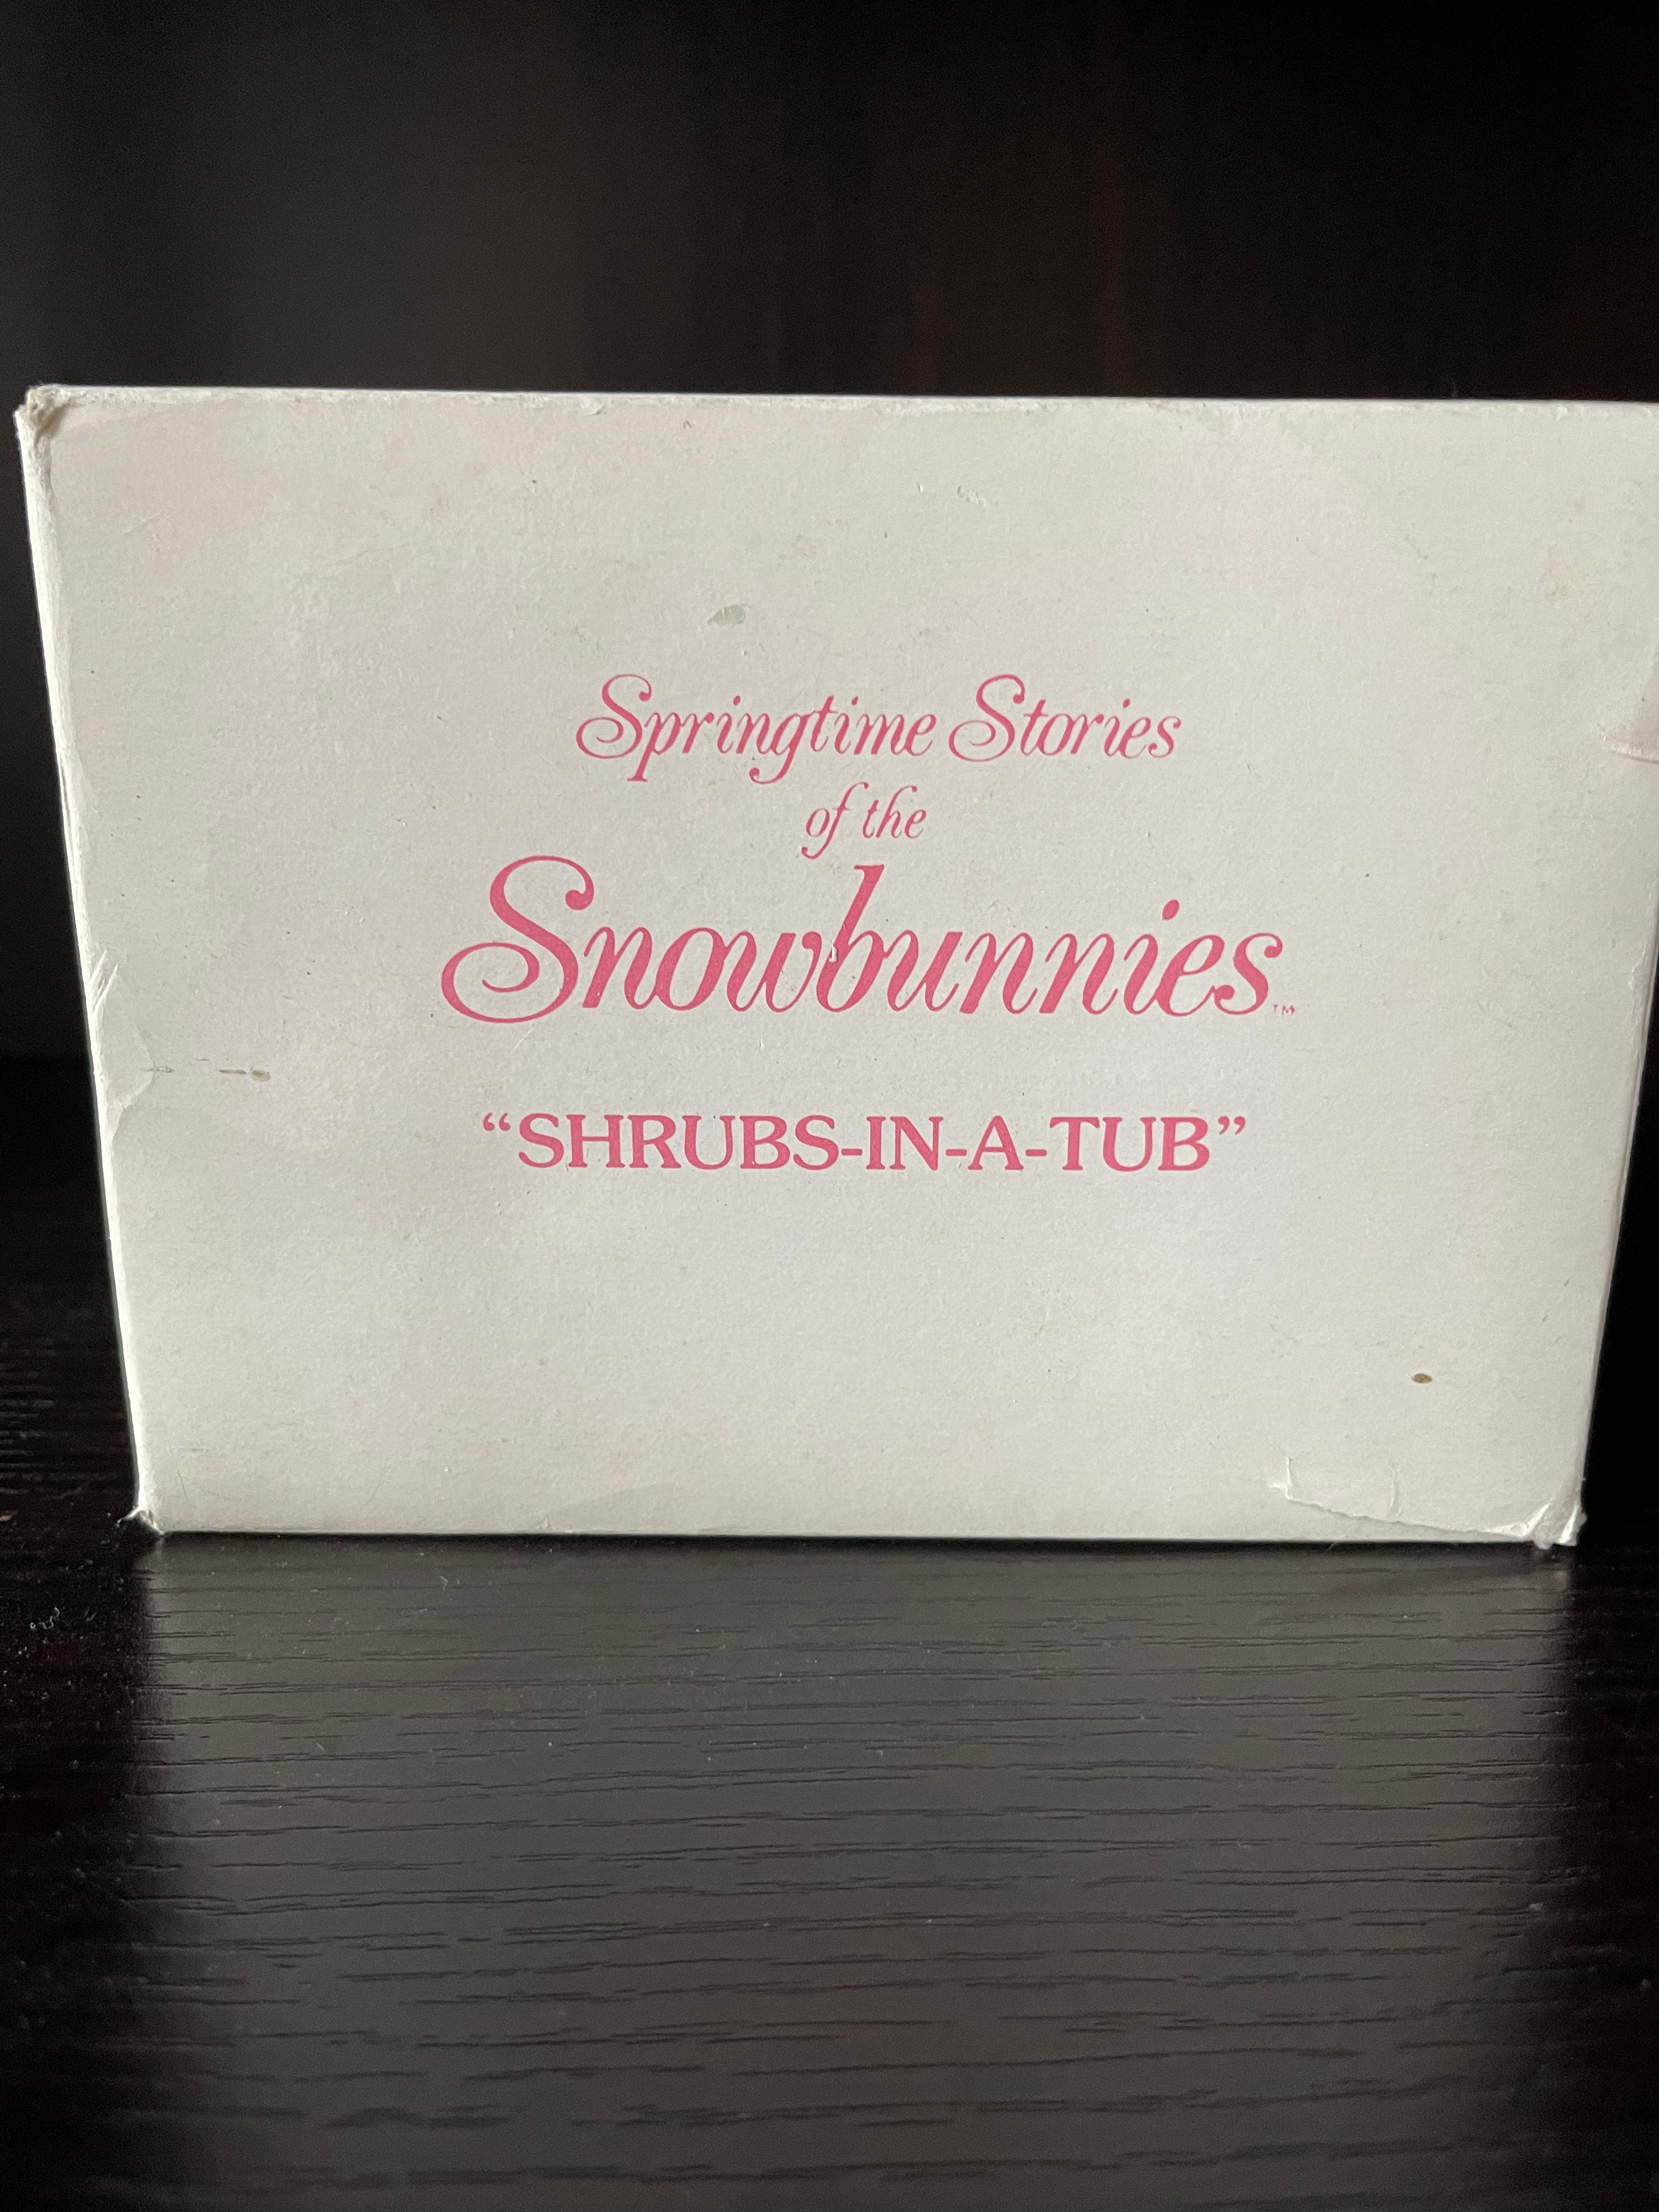 Snowbunnies "Shrubs-In-A-Tub"